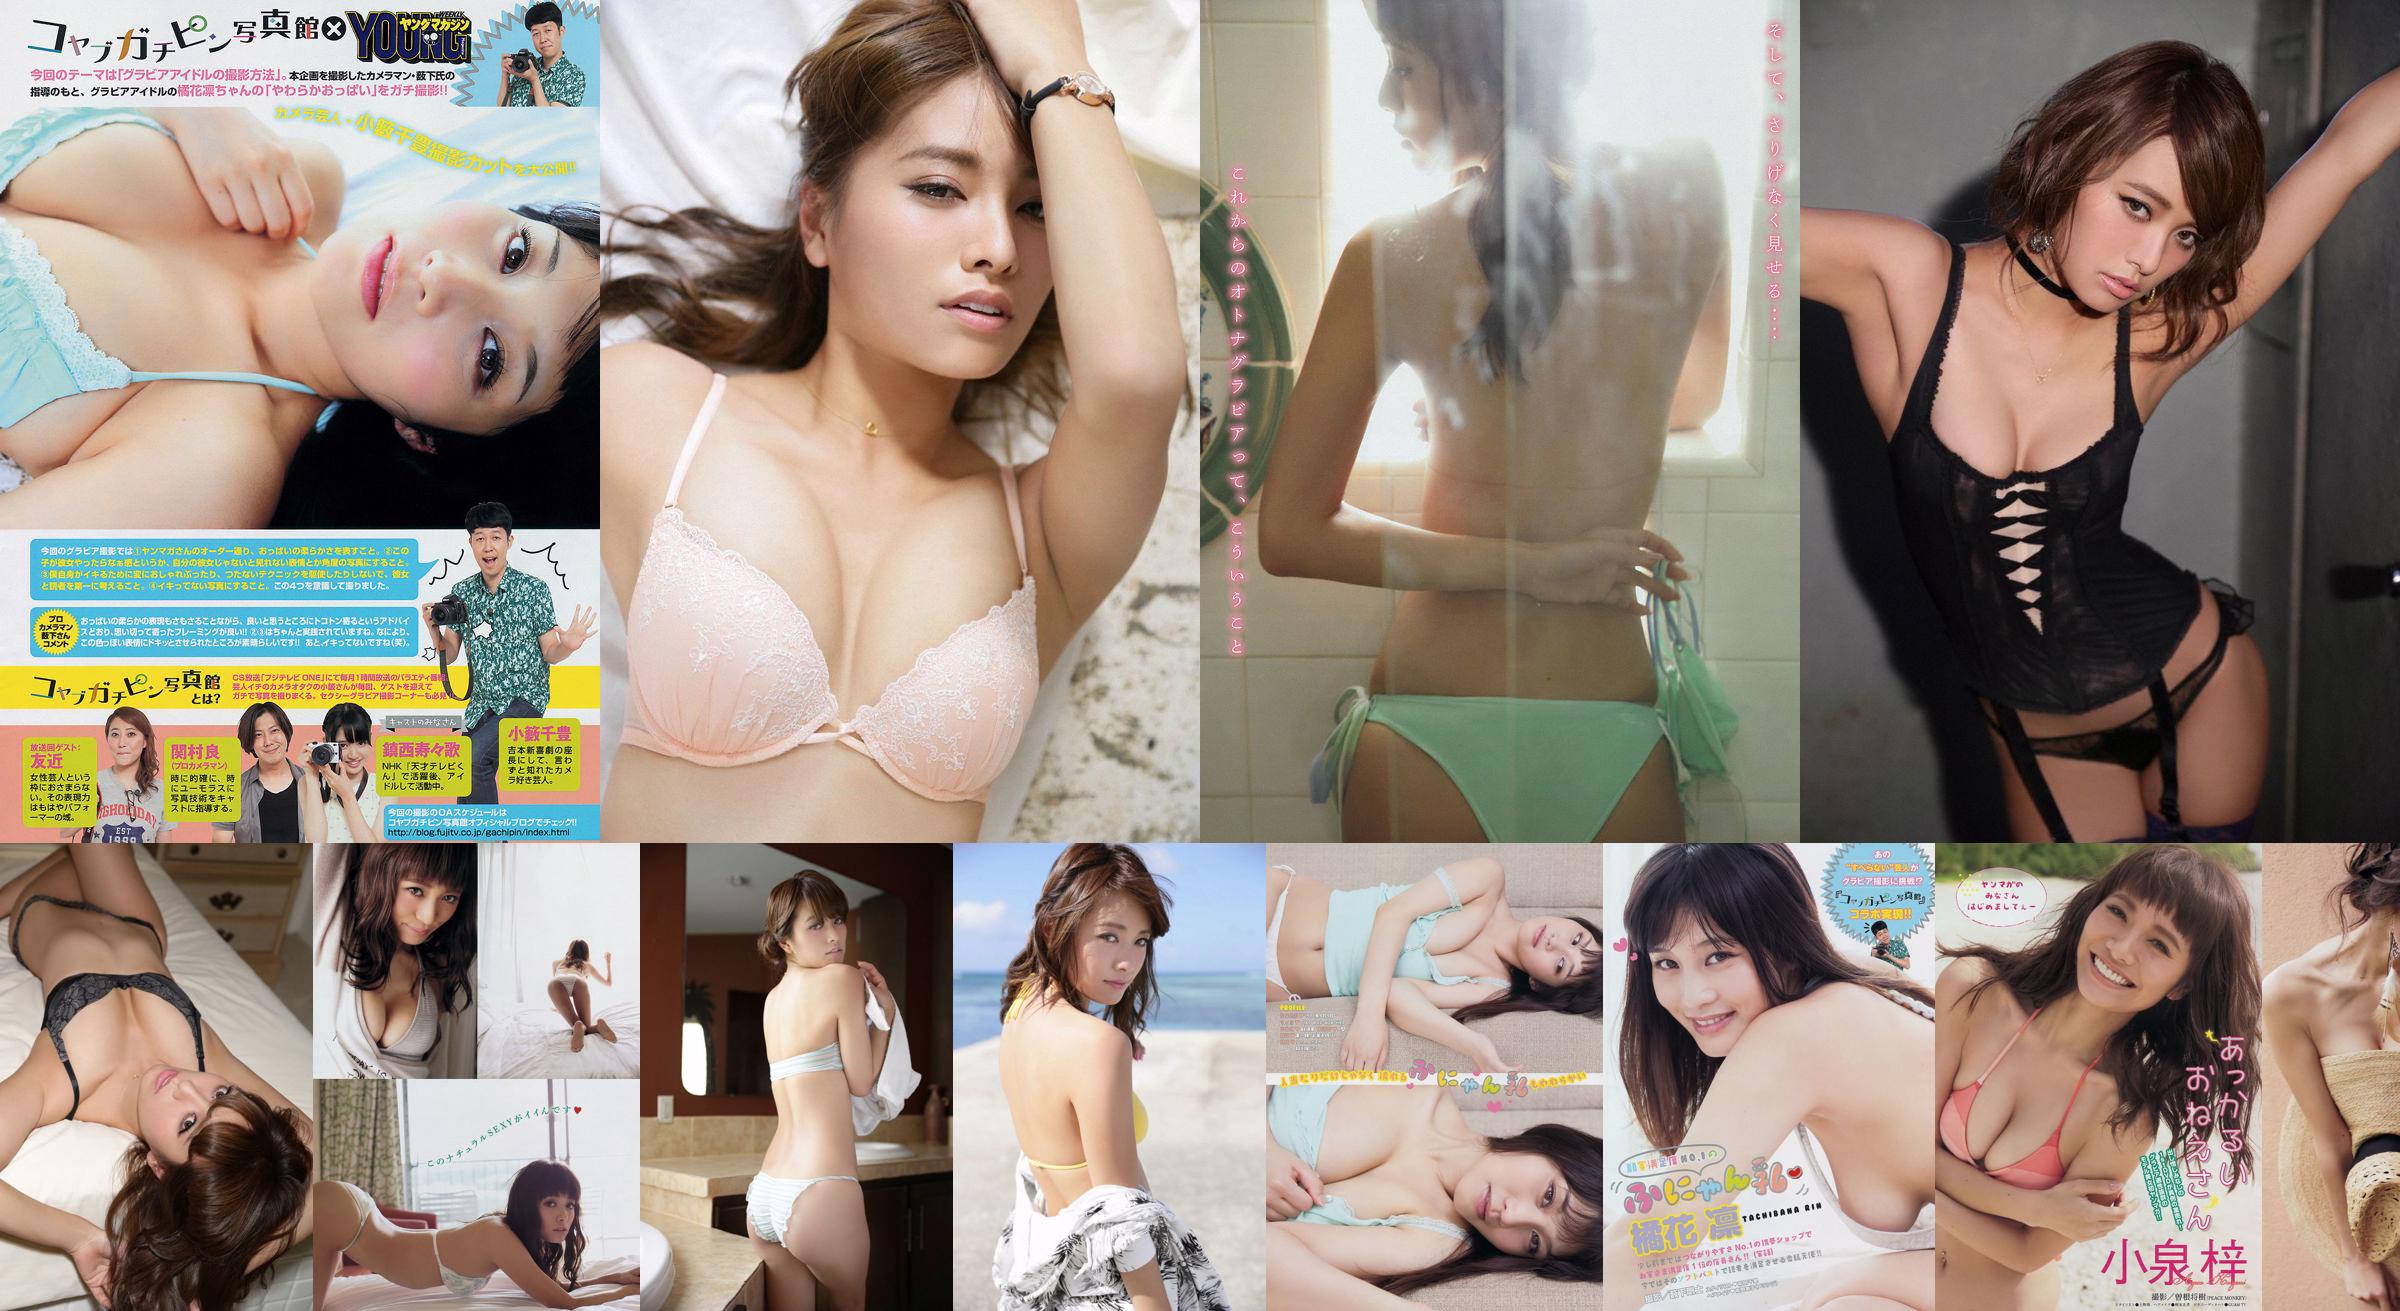 [Young Magazine] Azusa Koizumi Tachibana Rin 2014 No.43 Photo Magazine No.9eead9 หน้า 1